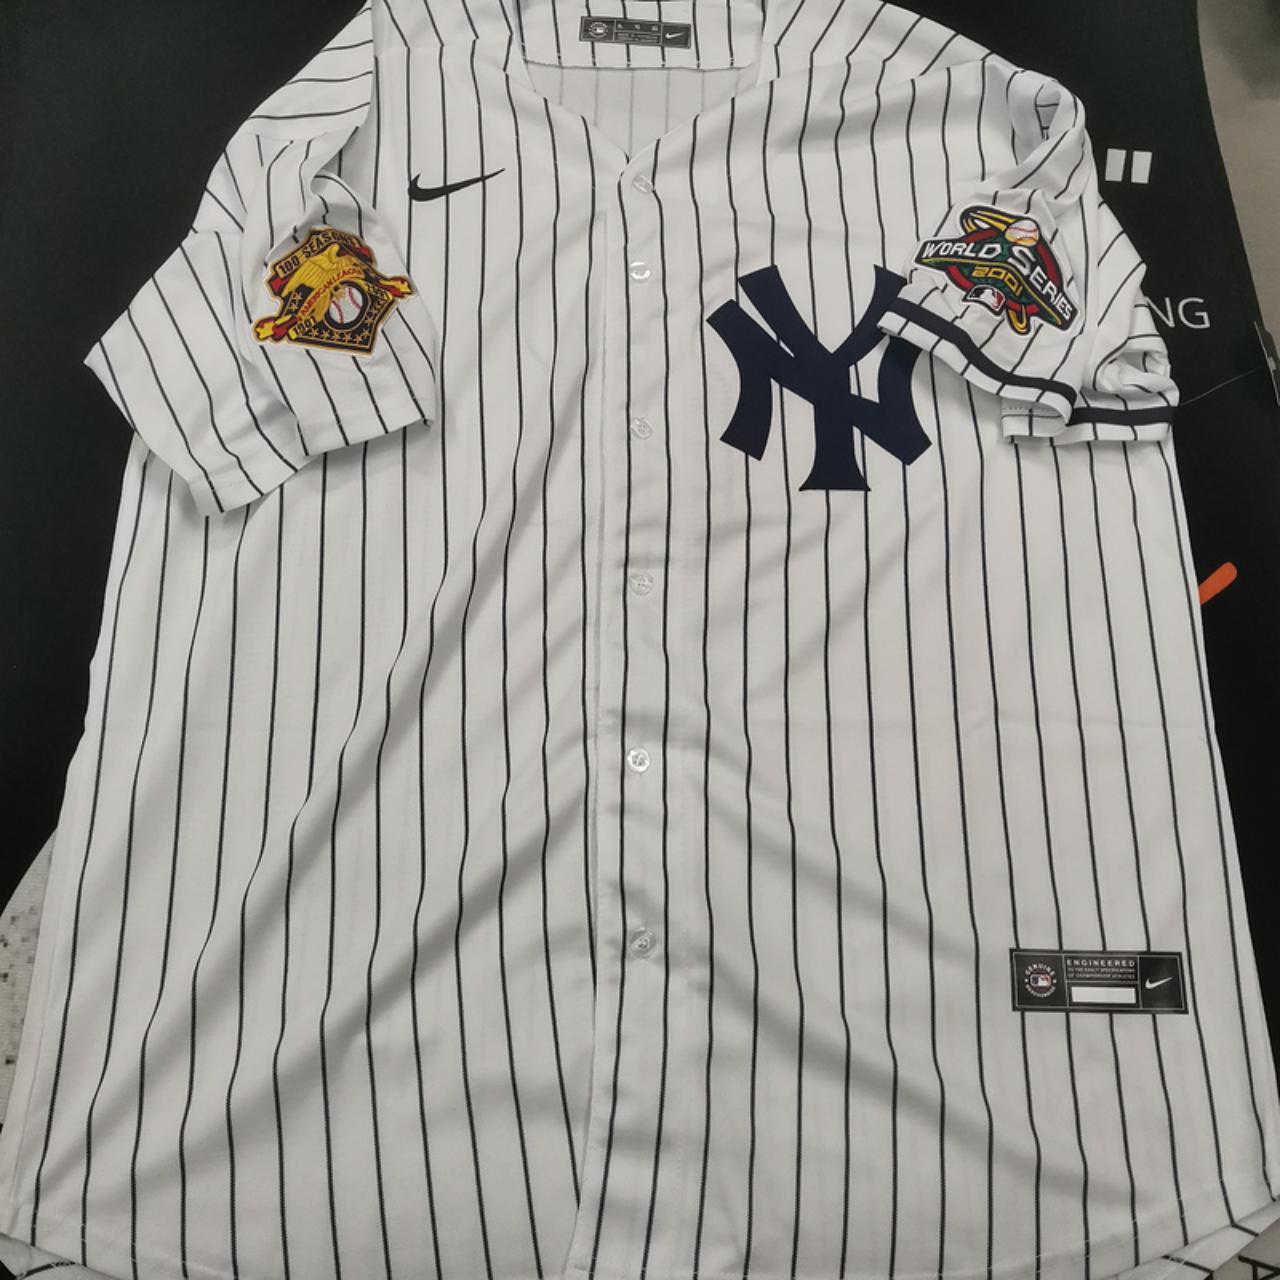 Nike Men's New York Yankees Derek Jeter #2 Gray T-Shirt